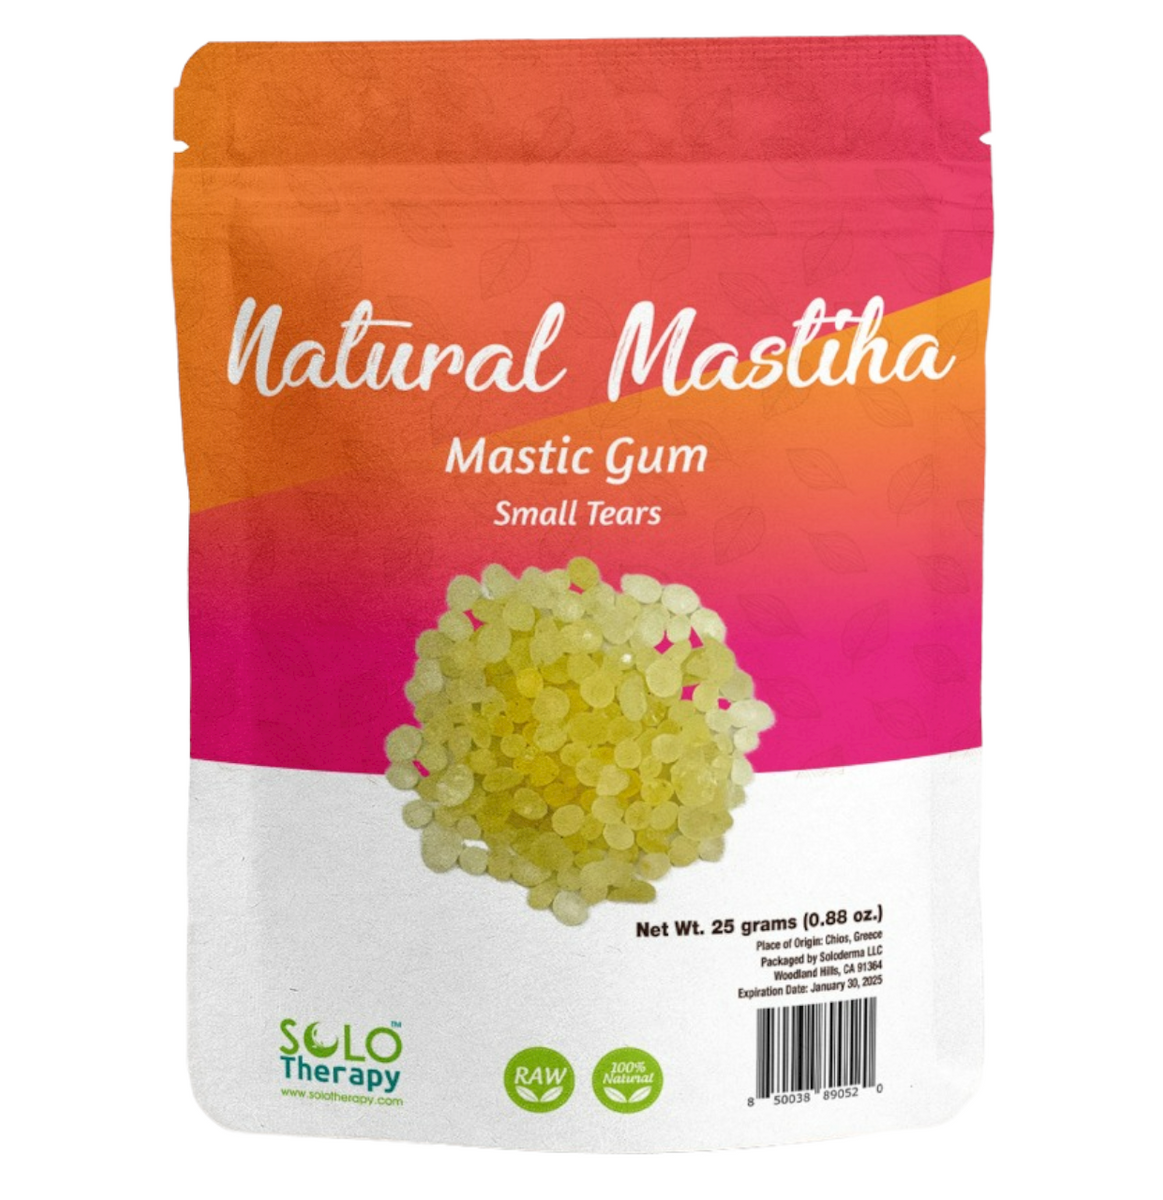 Mastic Gum, Chios Mastiha Greece